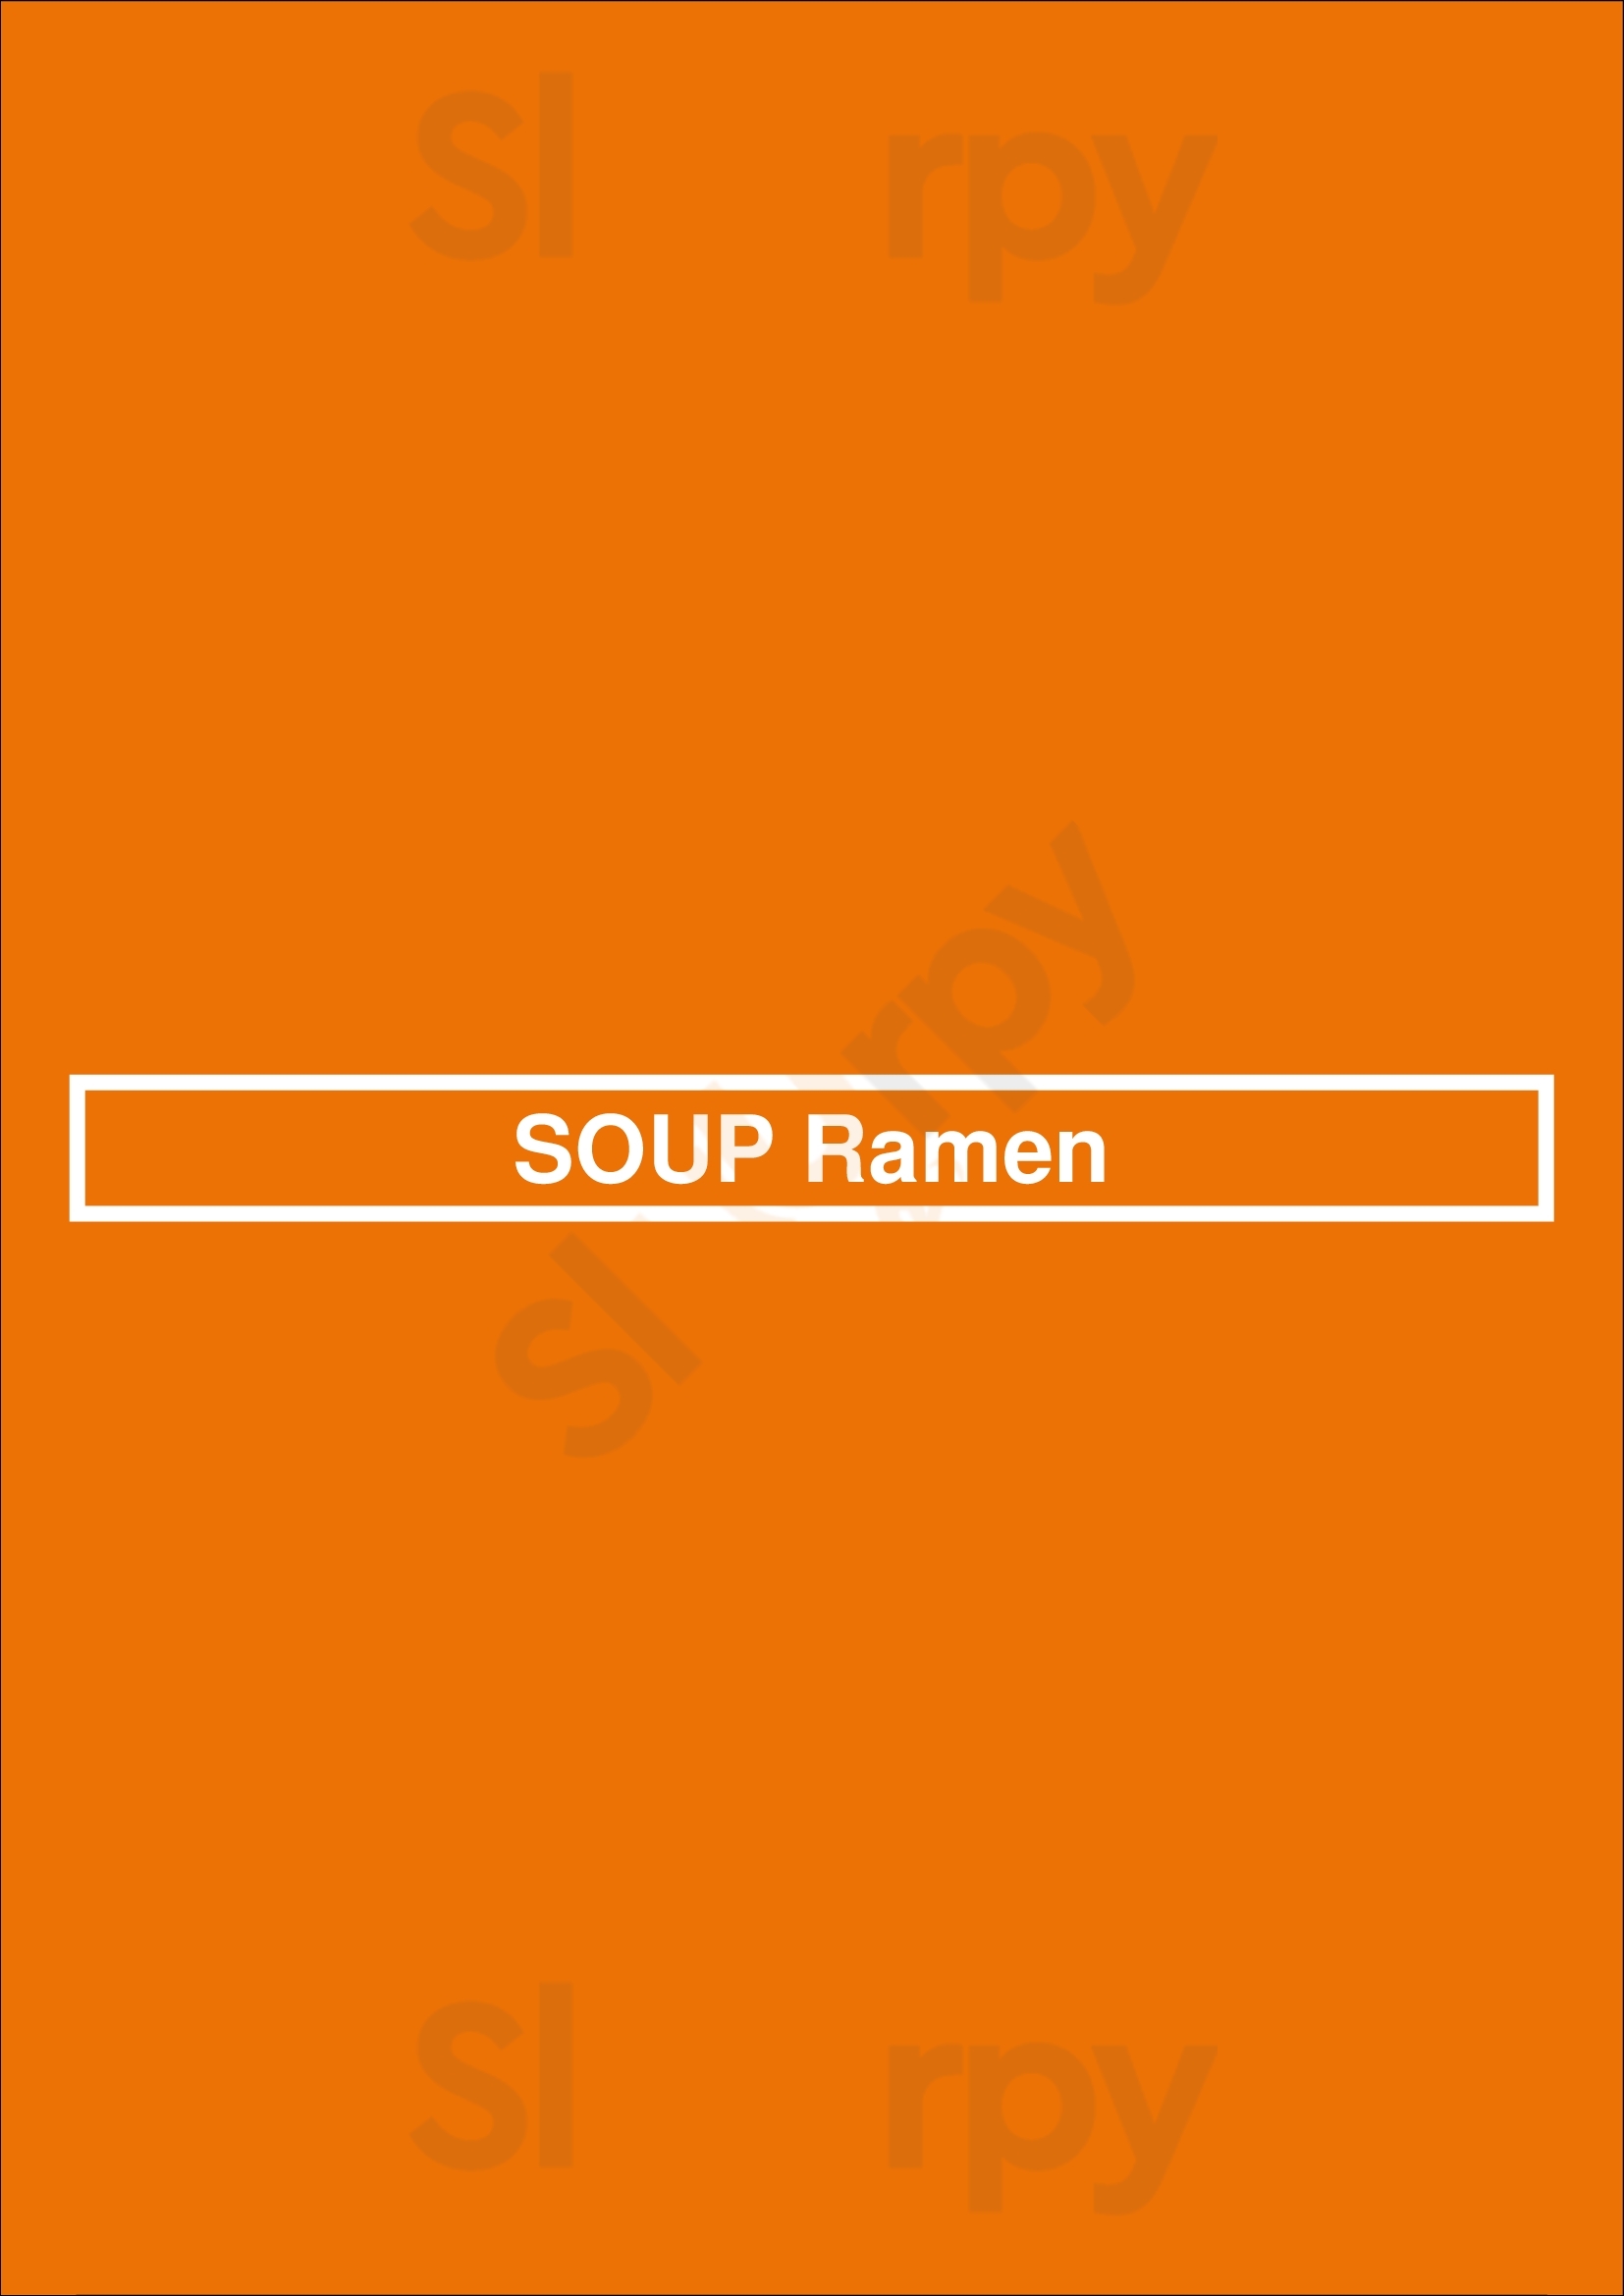 Soup Ramen Dun Laoghaire Menu - 1